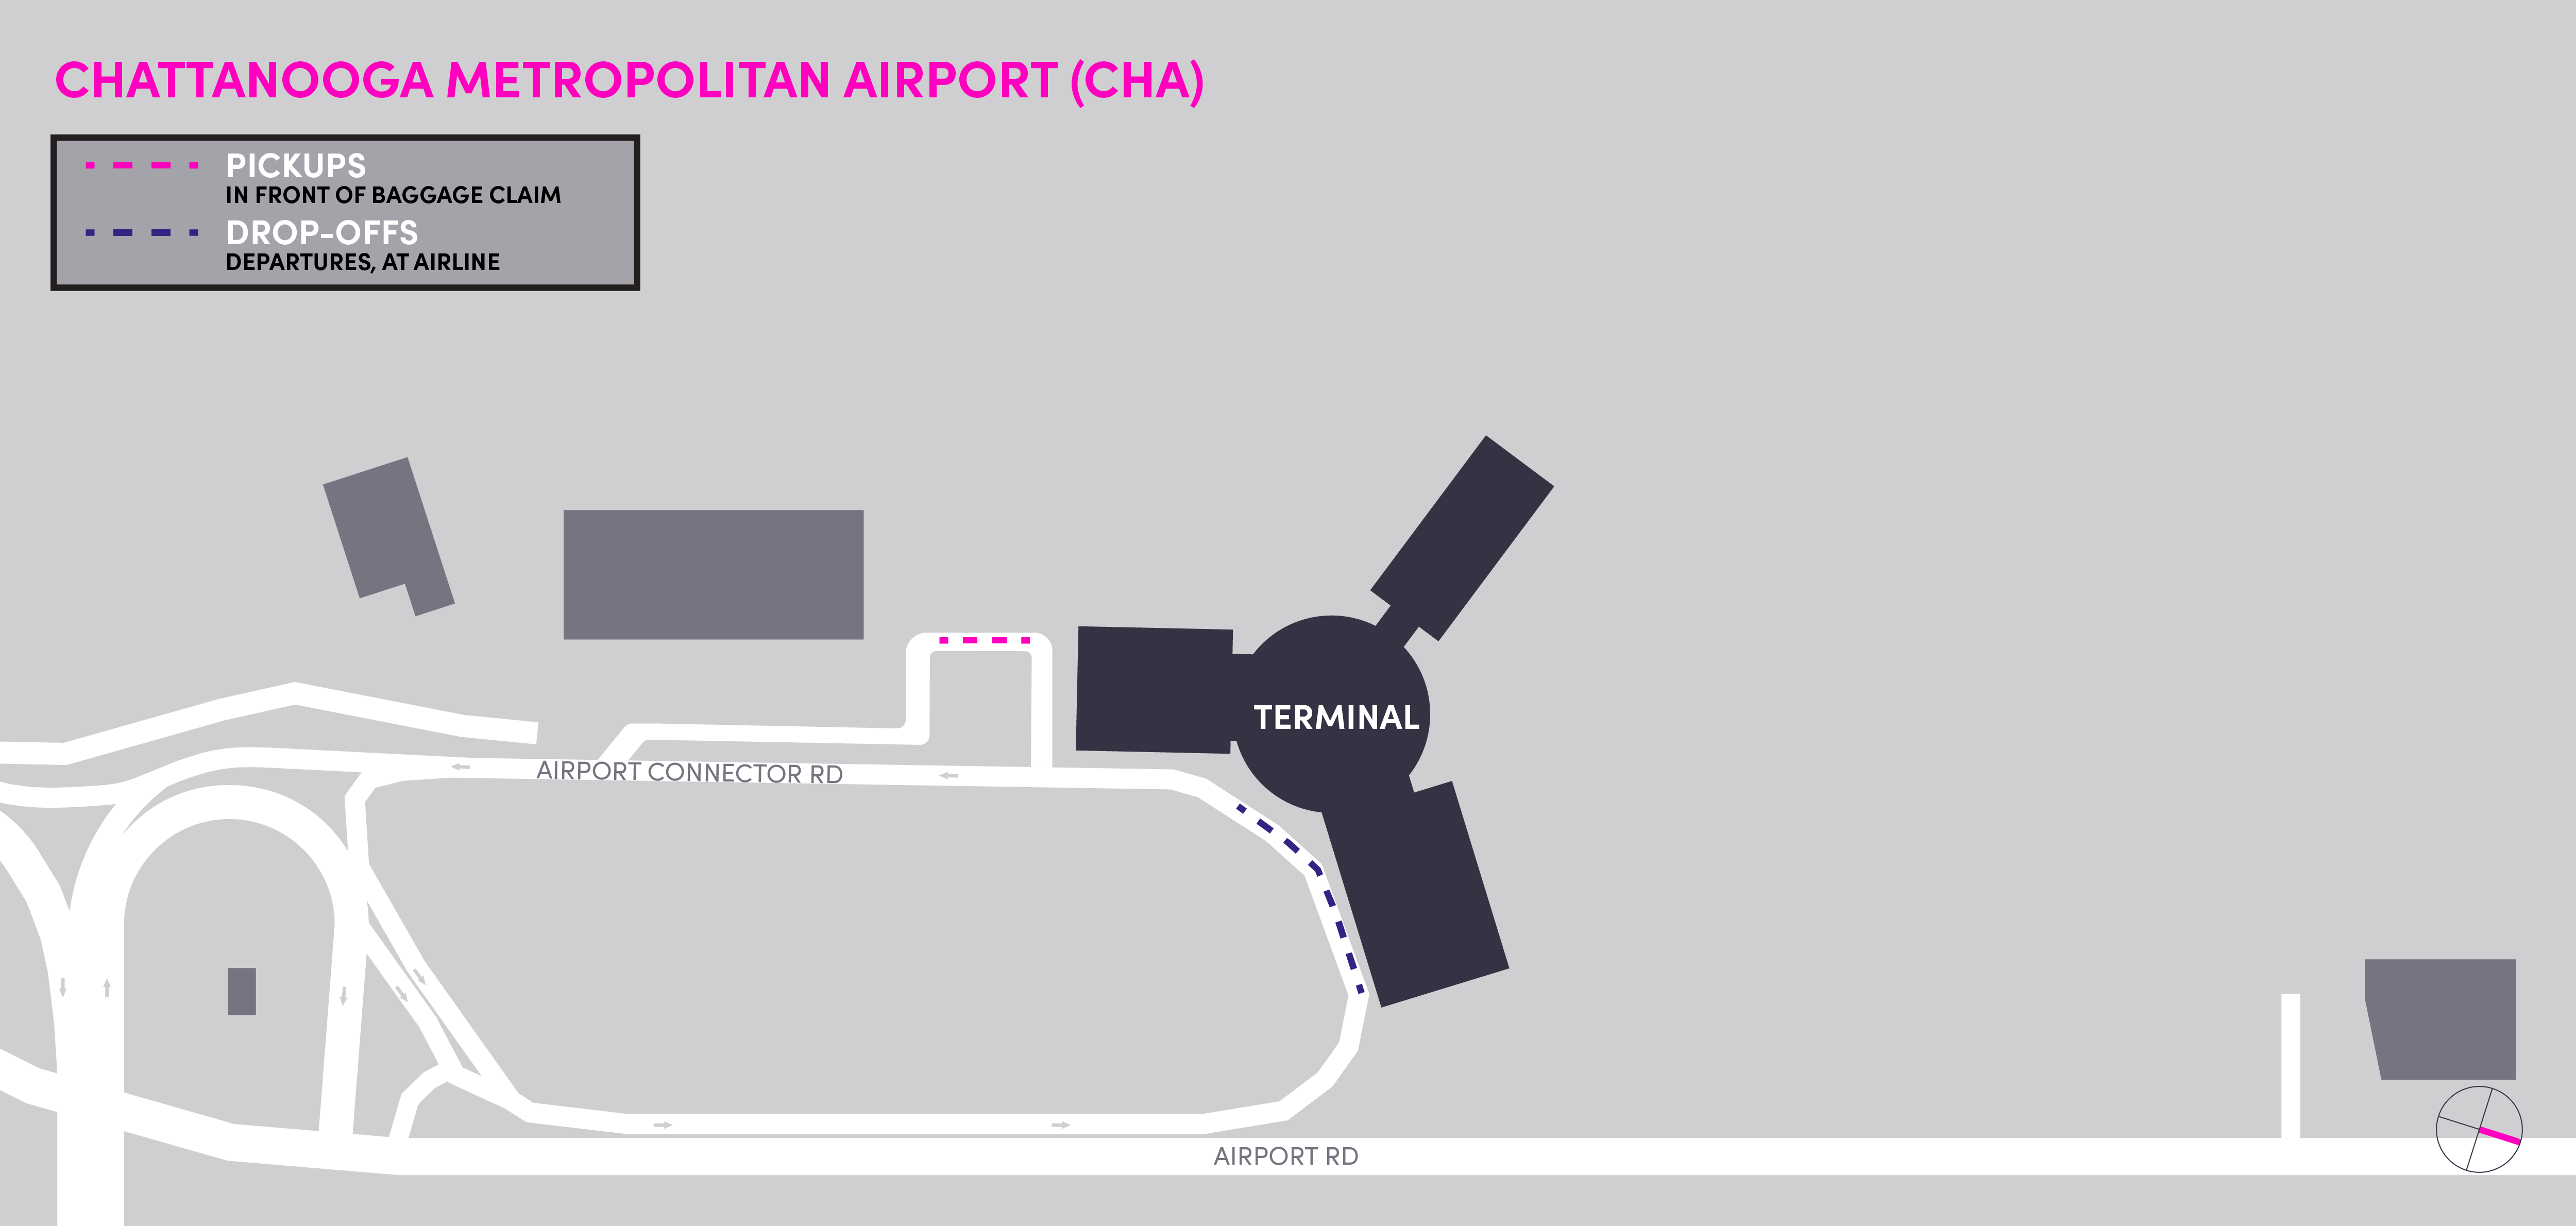 Plan de l’aéroport métropolitain de Chattanooga